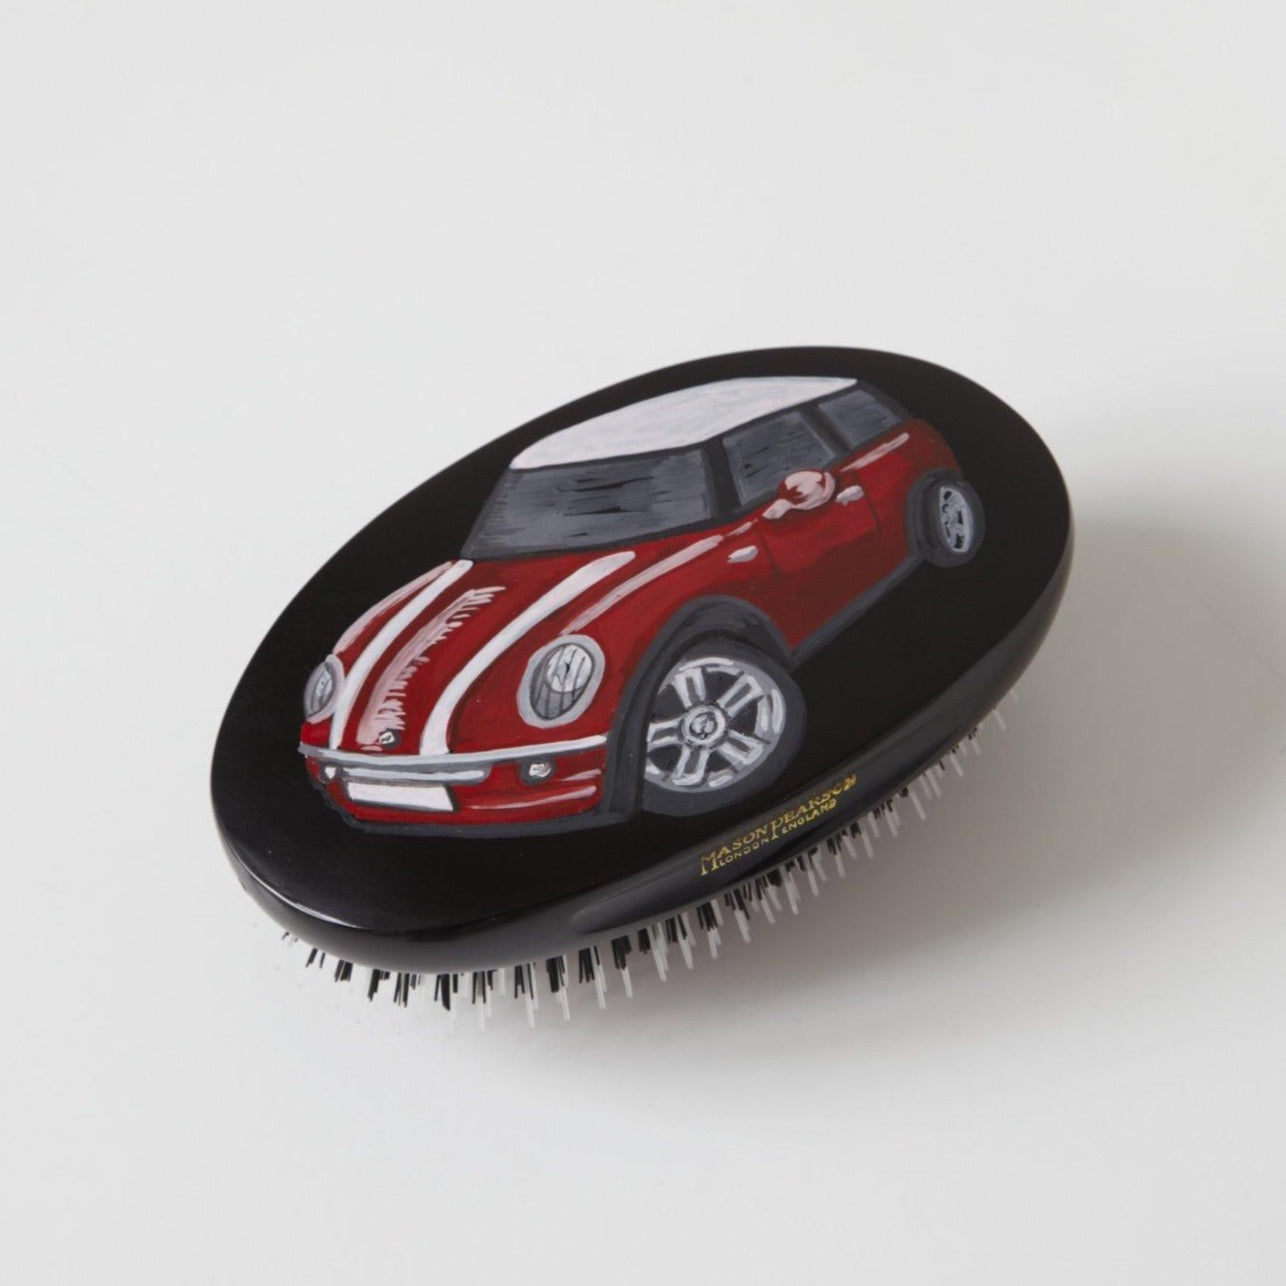 British Racer Hairbrush - Red Mini